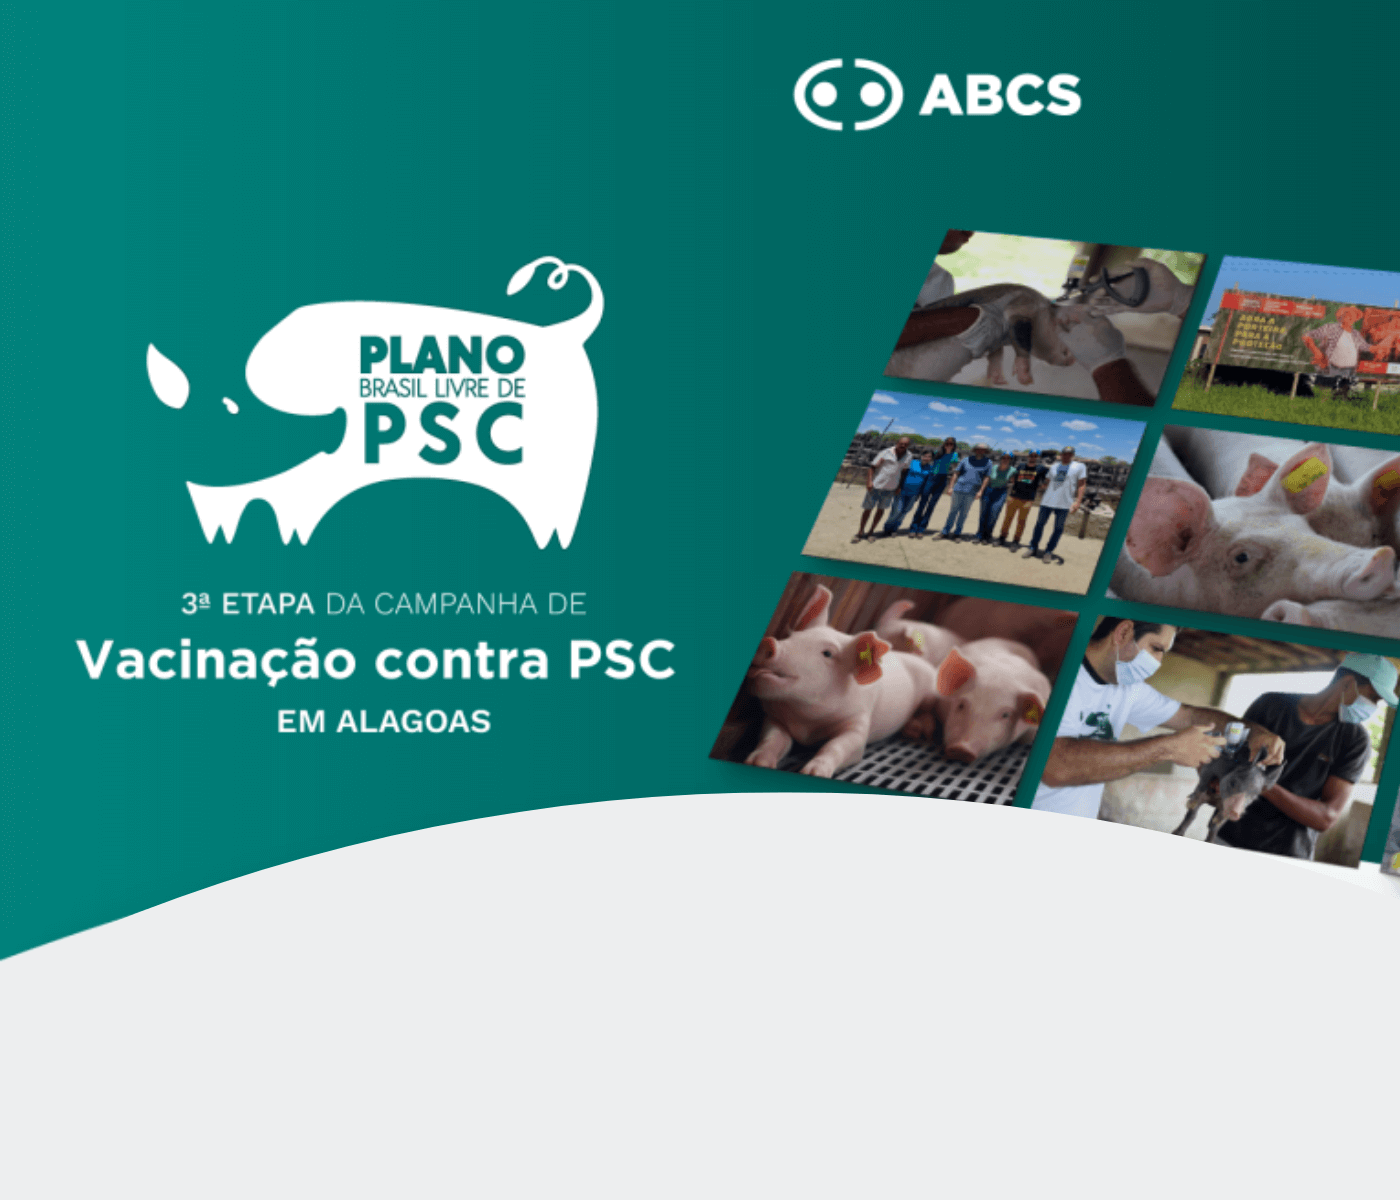 A Campanha de Vacinação Contra PSC em Alagoas finaliza a 3ª etapa com excelentes resultados, vacinando mais de 116 mil suínos